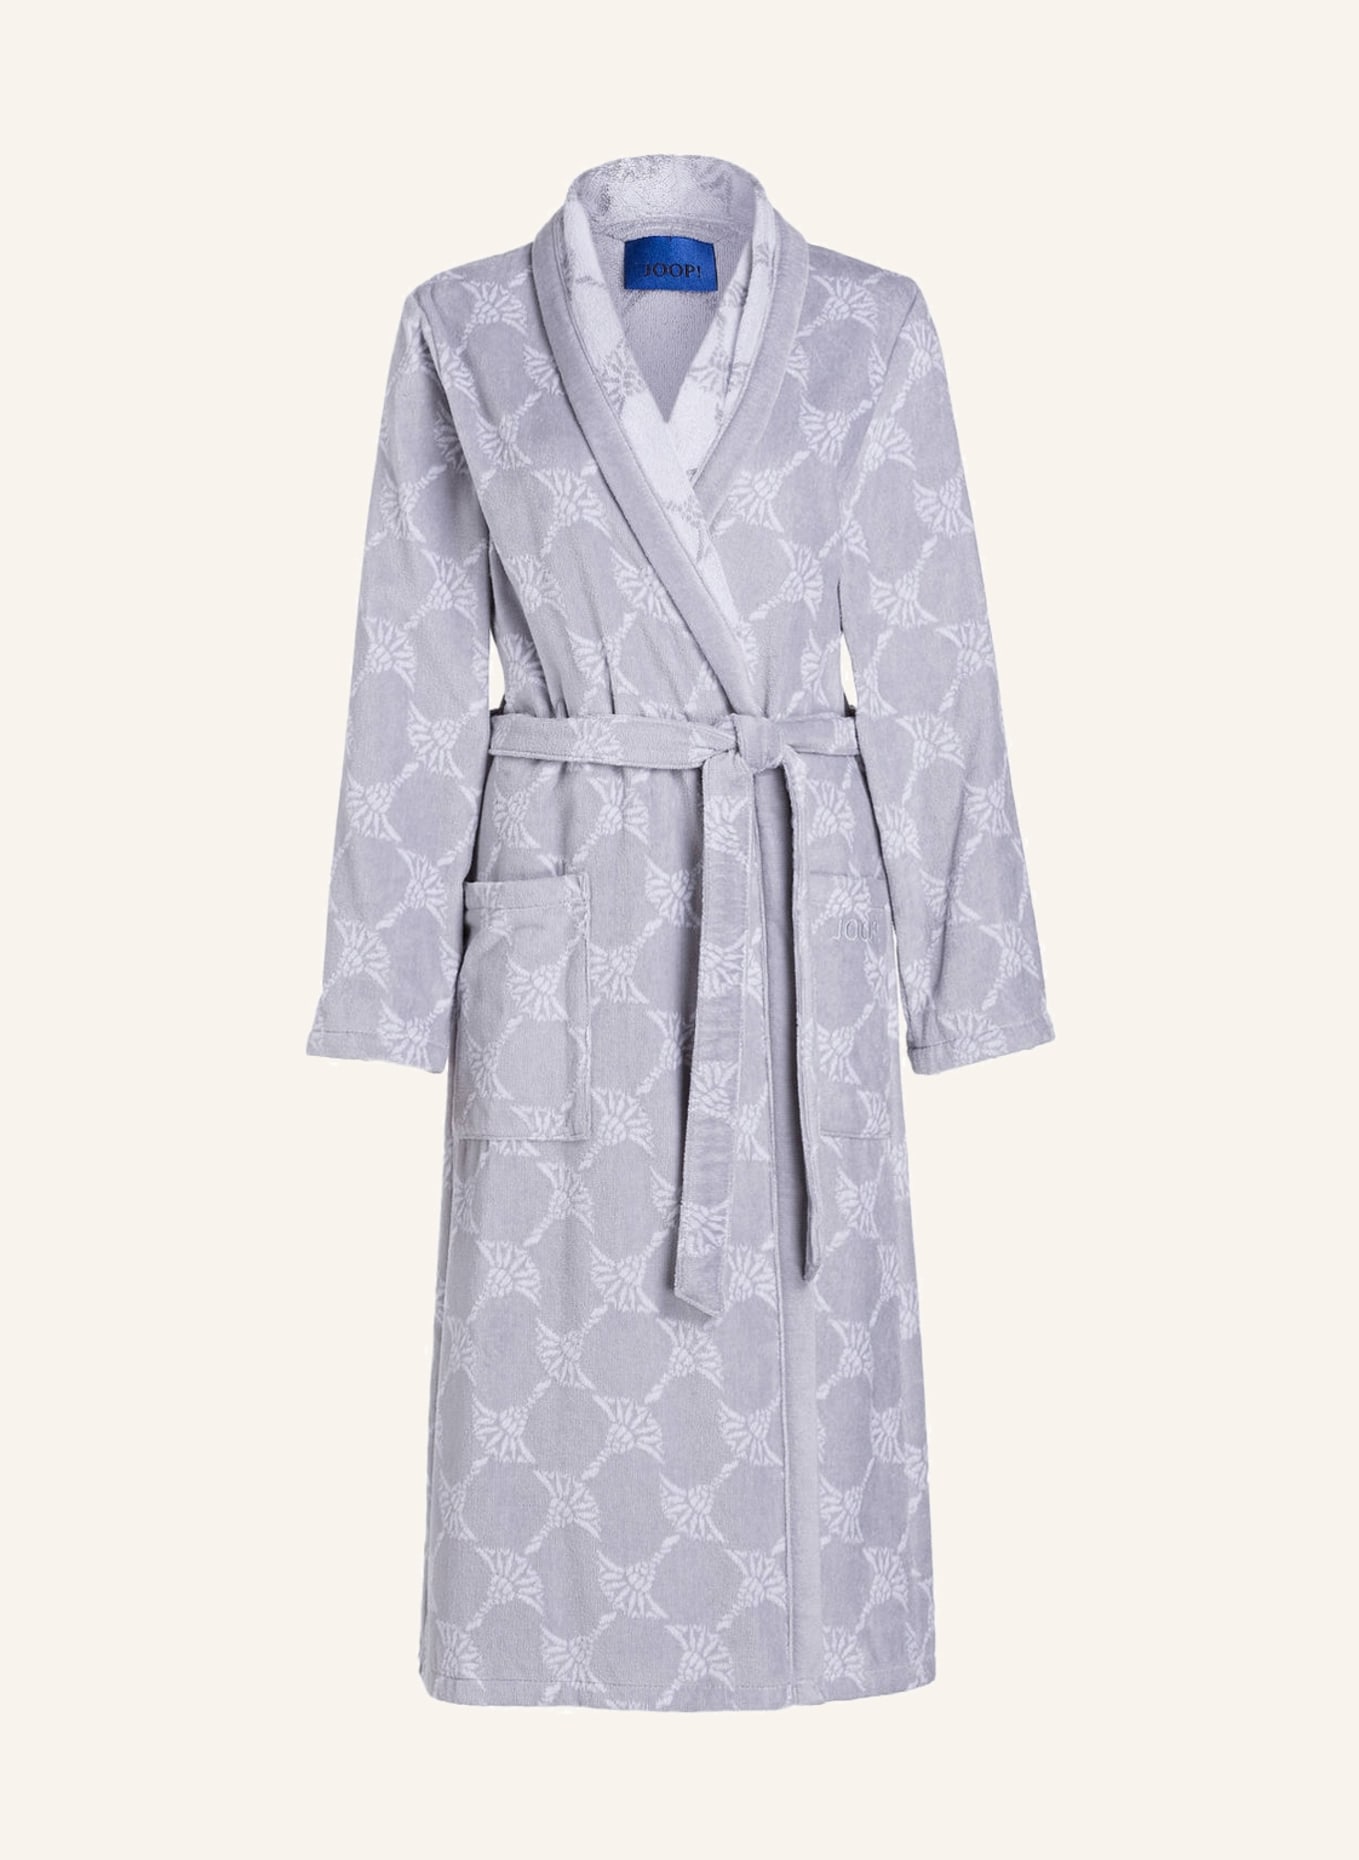 JOOP! Women’s bathrobe , Color: GRAY (Image 1)